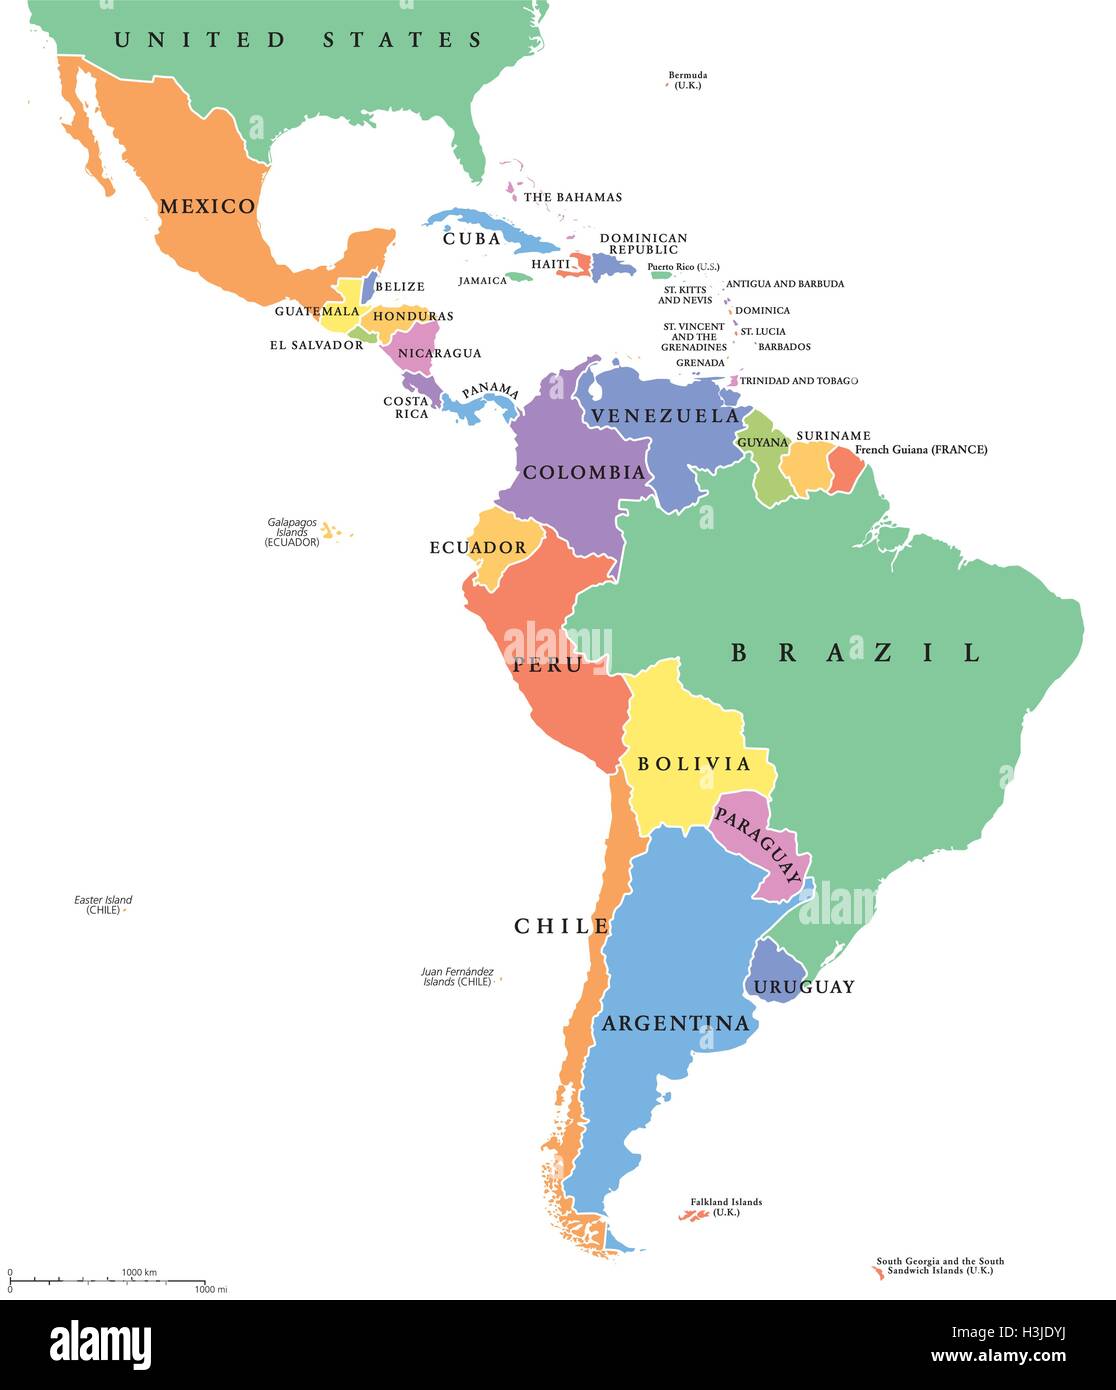 L'Amérique latine seule membres carte politique. Pays de différentes couleurs, avec des frontières nationales et l'anglais les noms de pays. Vector Illustration de Vecteur